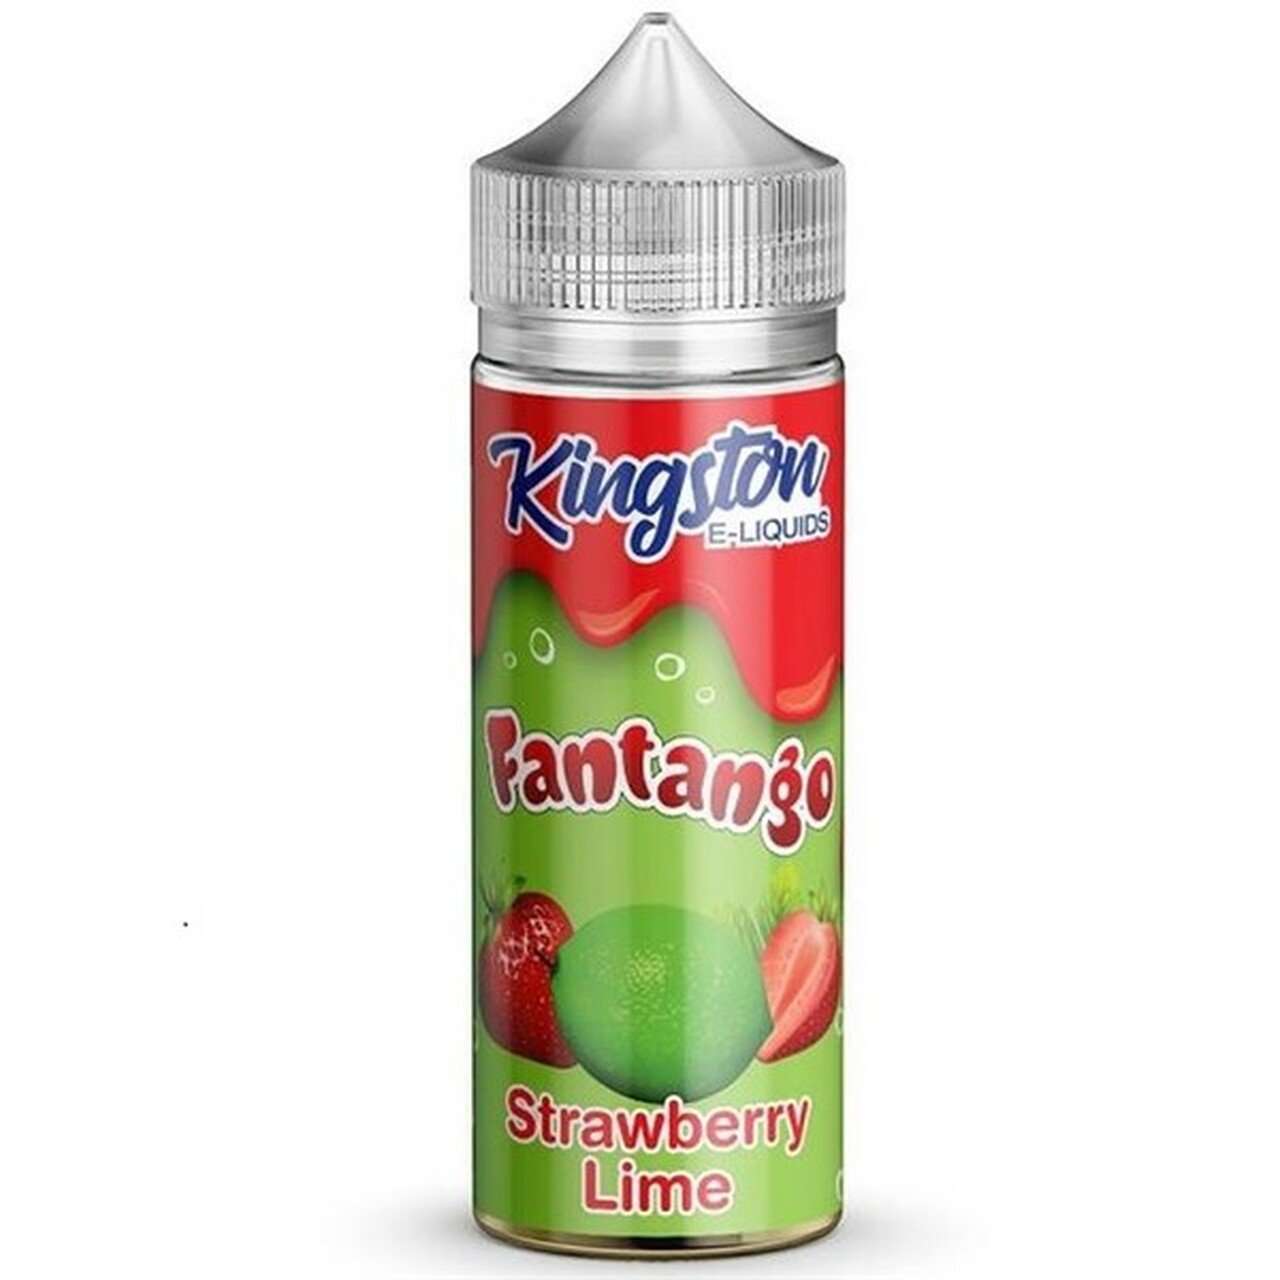  Kingston Fantango - Strawberry Lime - 100ml 